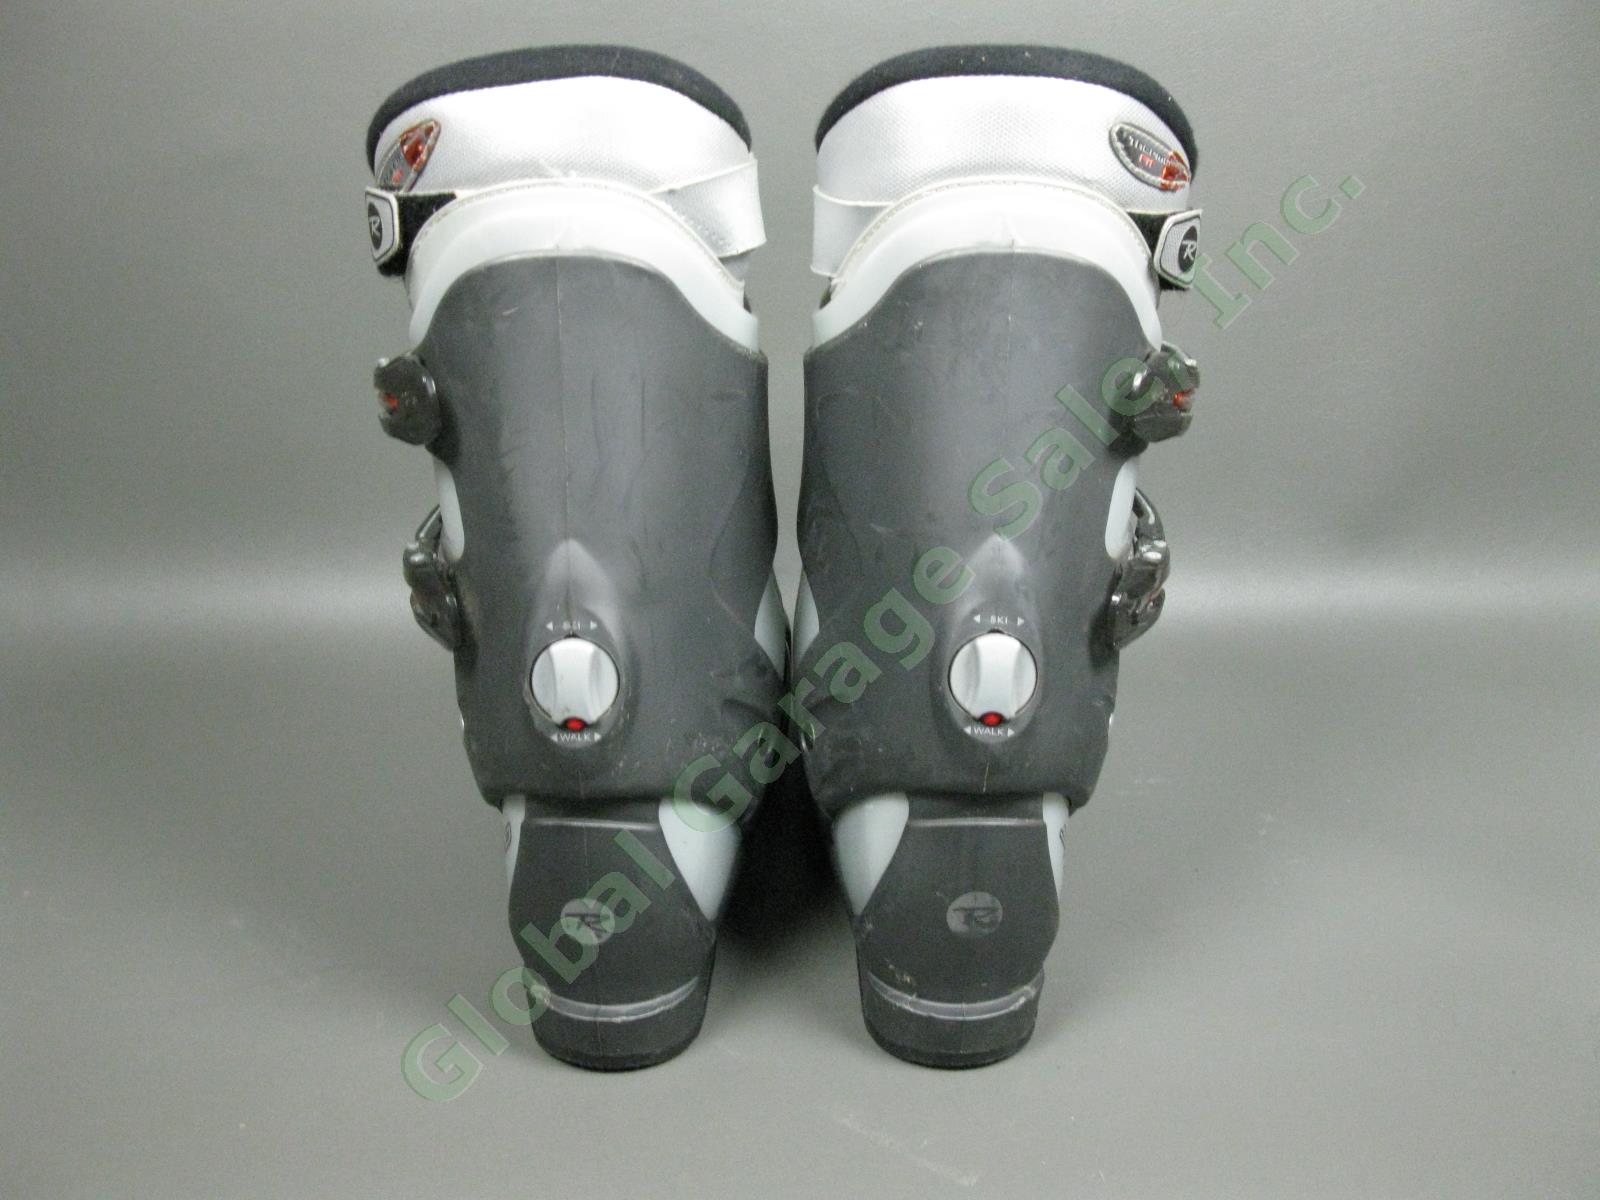 Rossignol Salto X Cockpit Orange/Silver Ski Boots Size 30.5 EUR/13 US/12 UK NR! 4